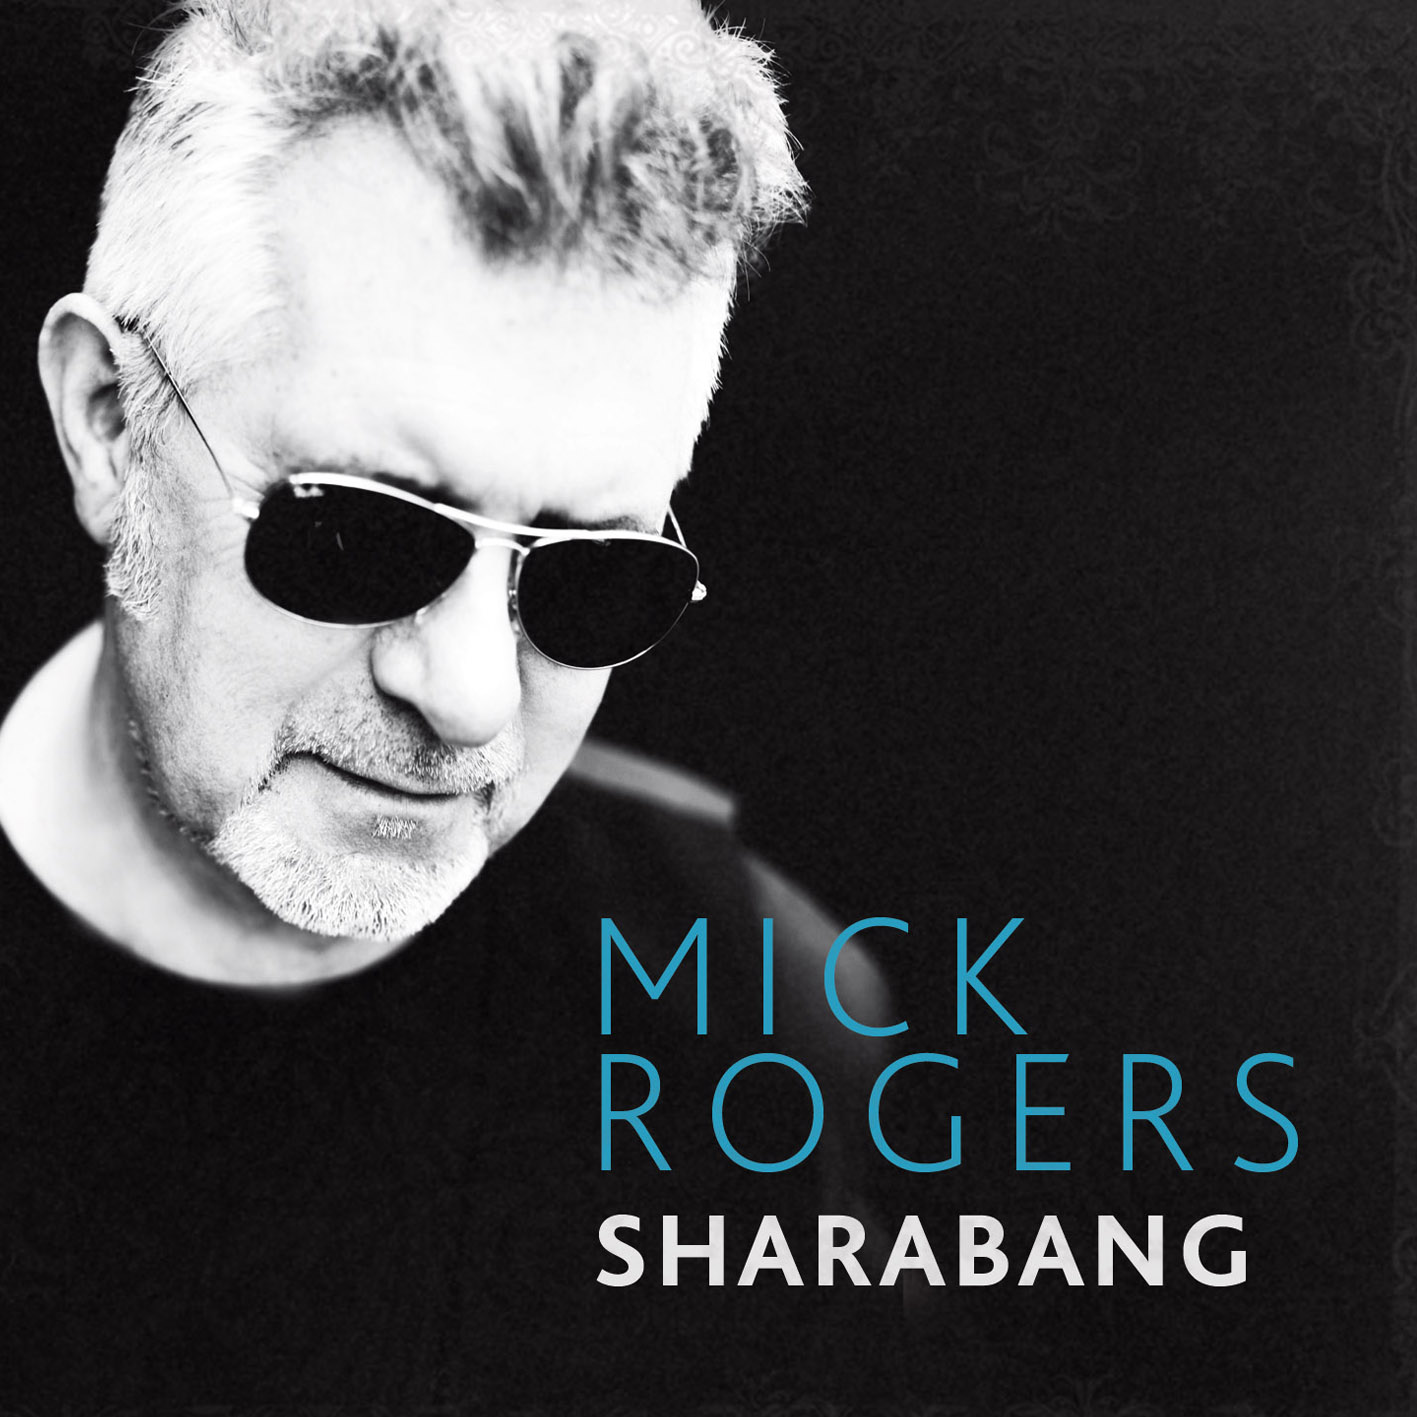 Mick Rogers - "Sharabang"